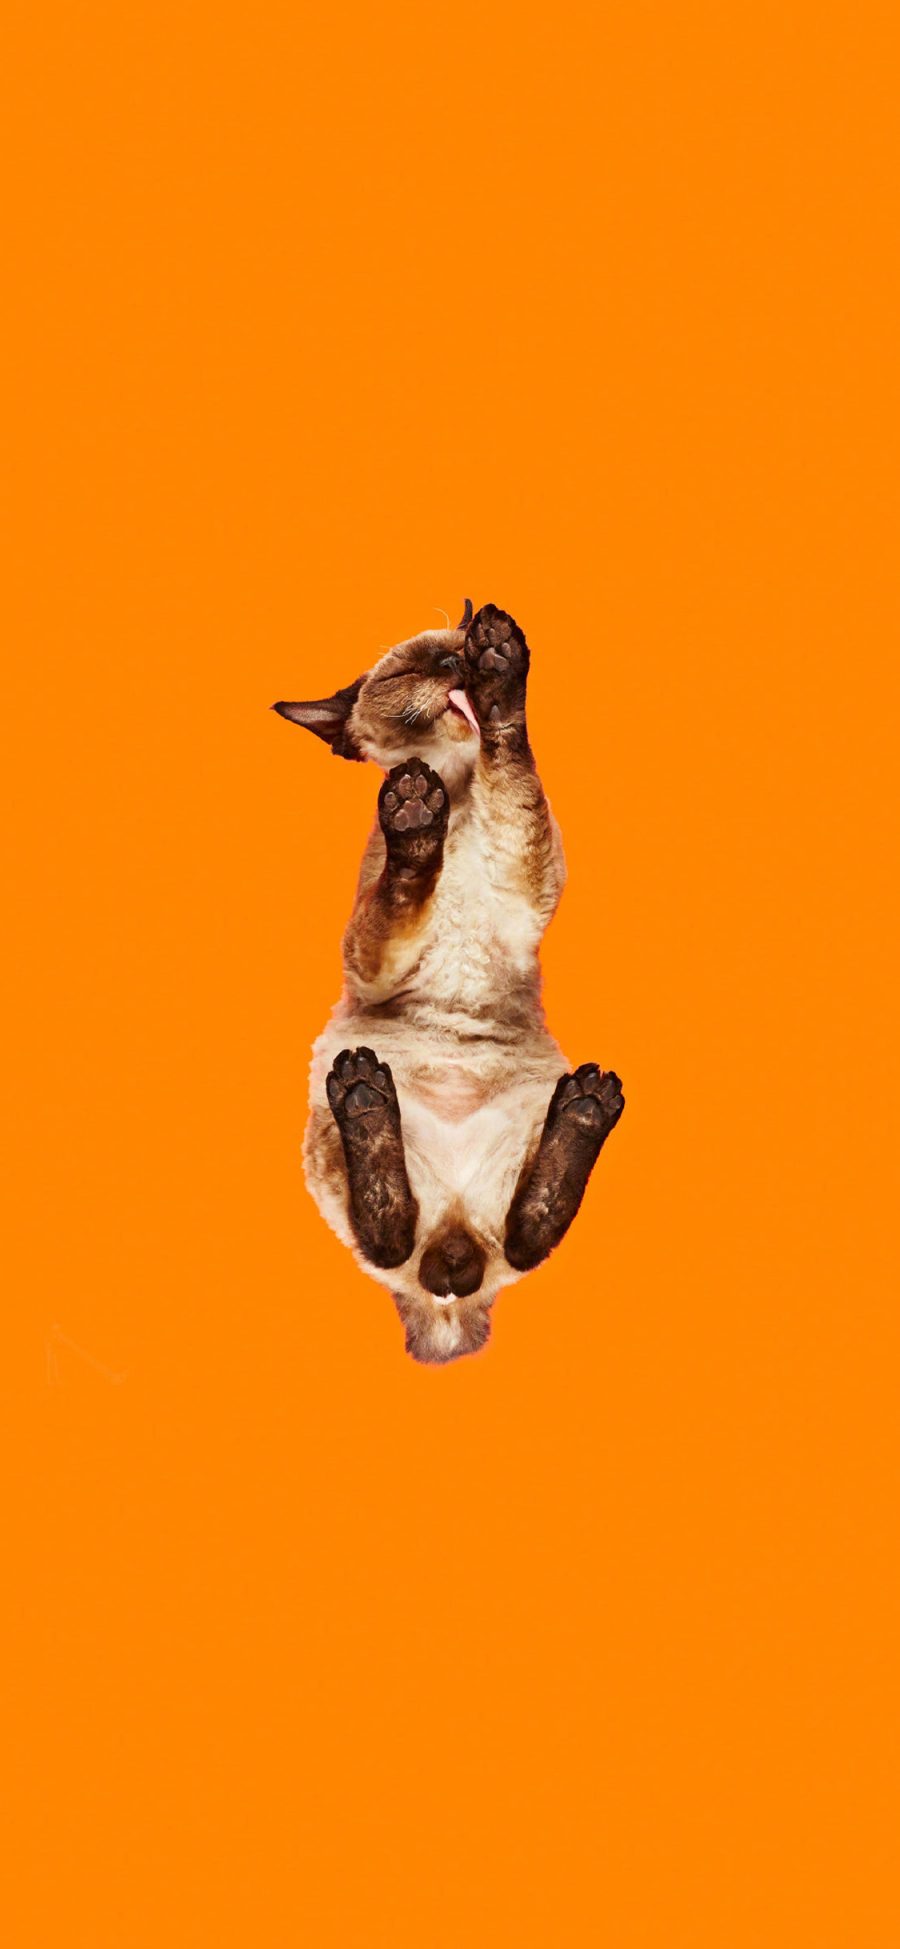 [2436×1125]猫咪 喵星人 宠物 橙色 橘色 仰视 苹果手机壁纸图片